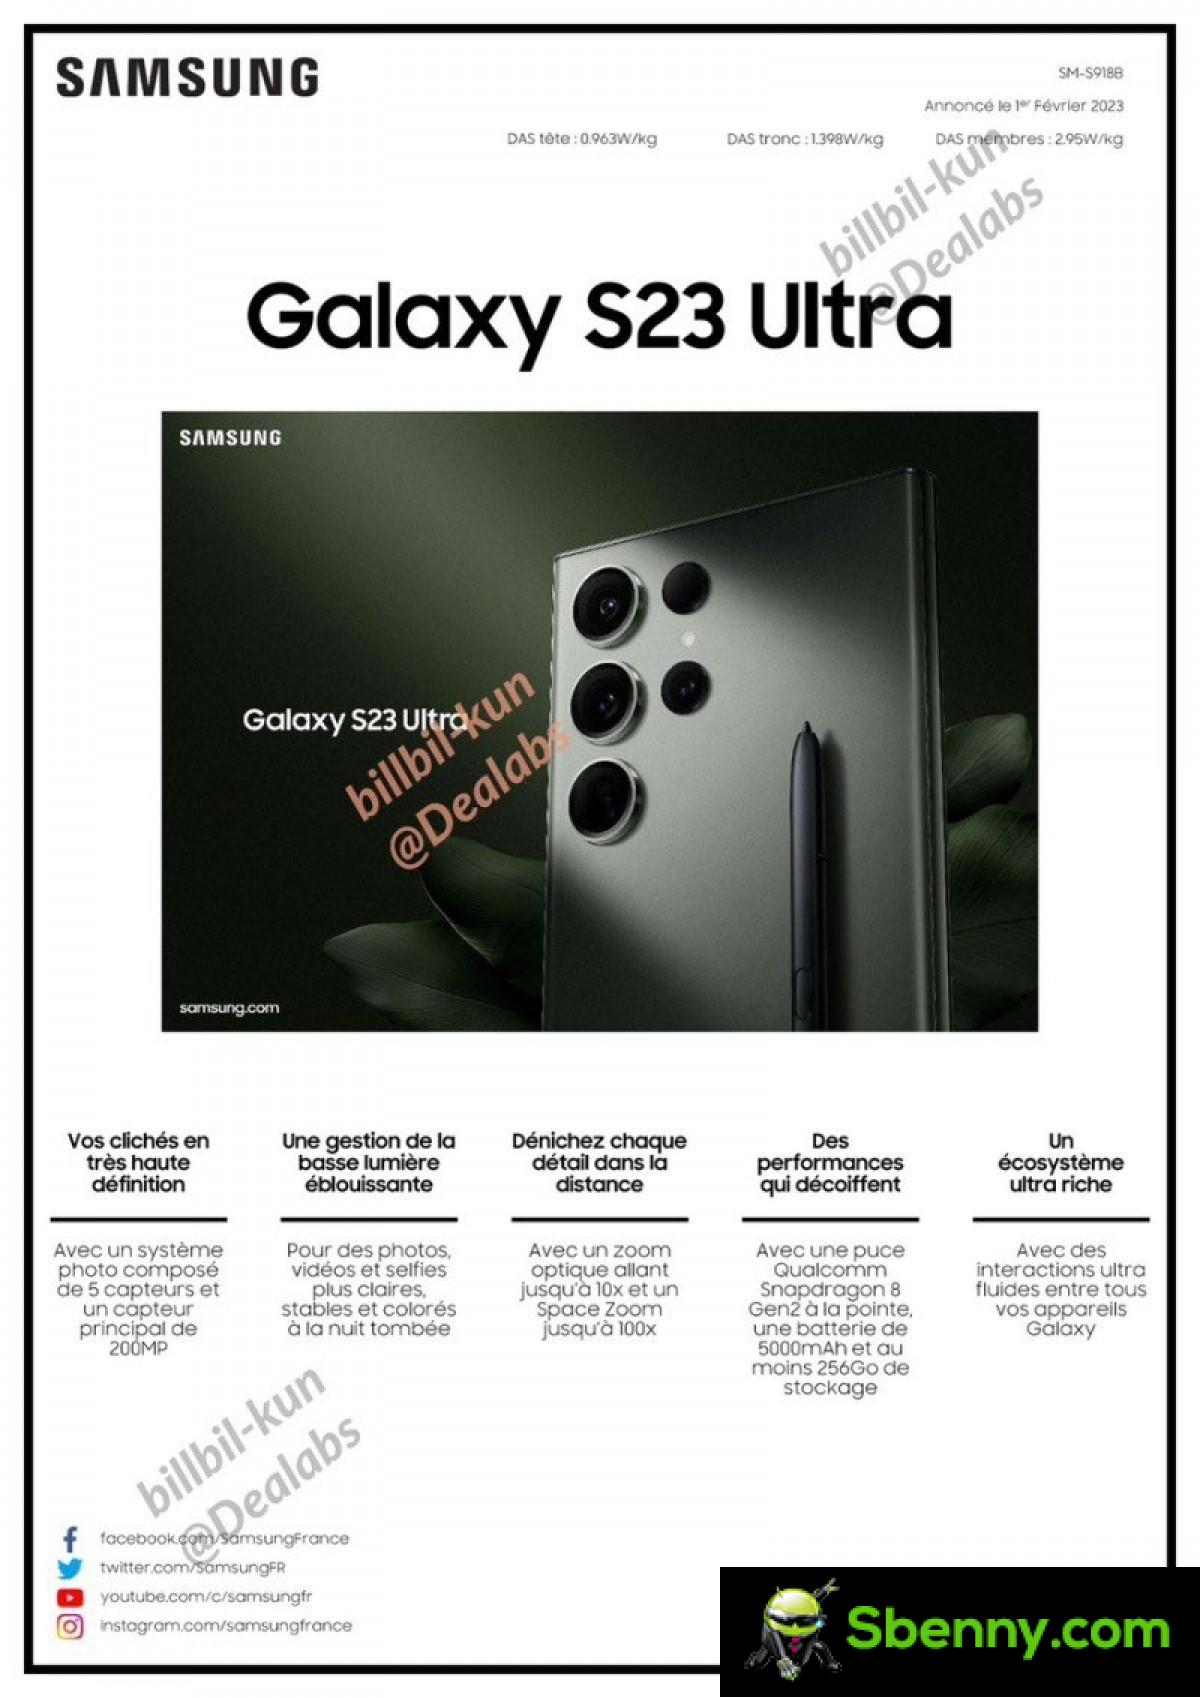 Технический лист Samsung Galaxy S23 Ultra просочился полностью